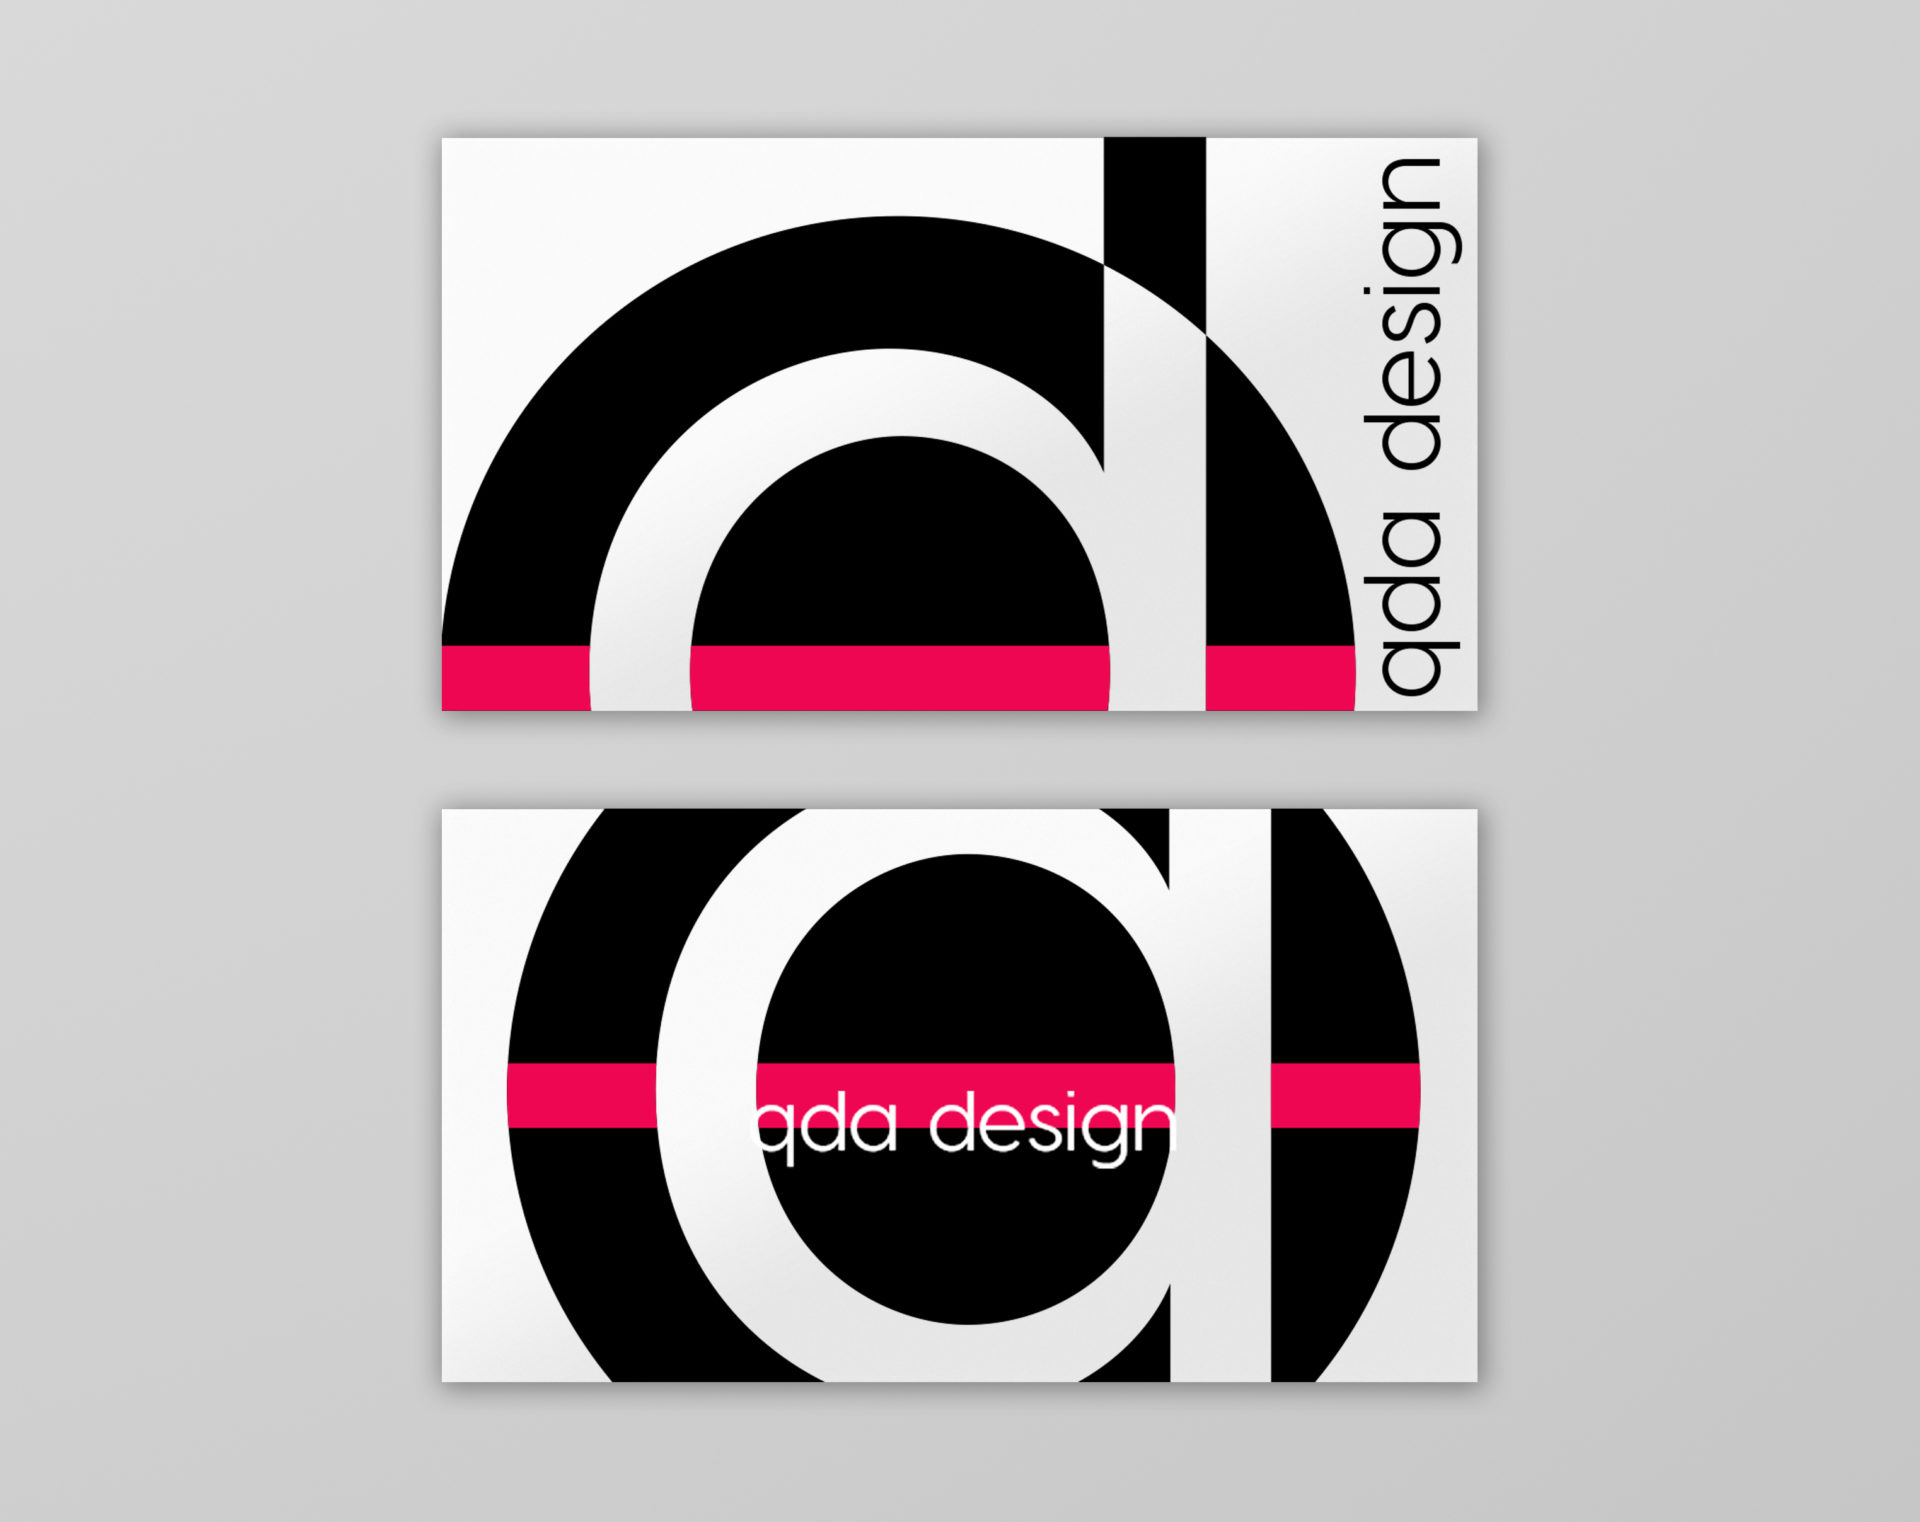 qda design logo qda design